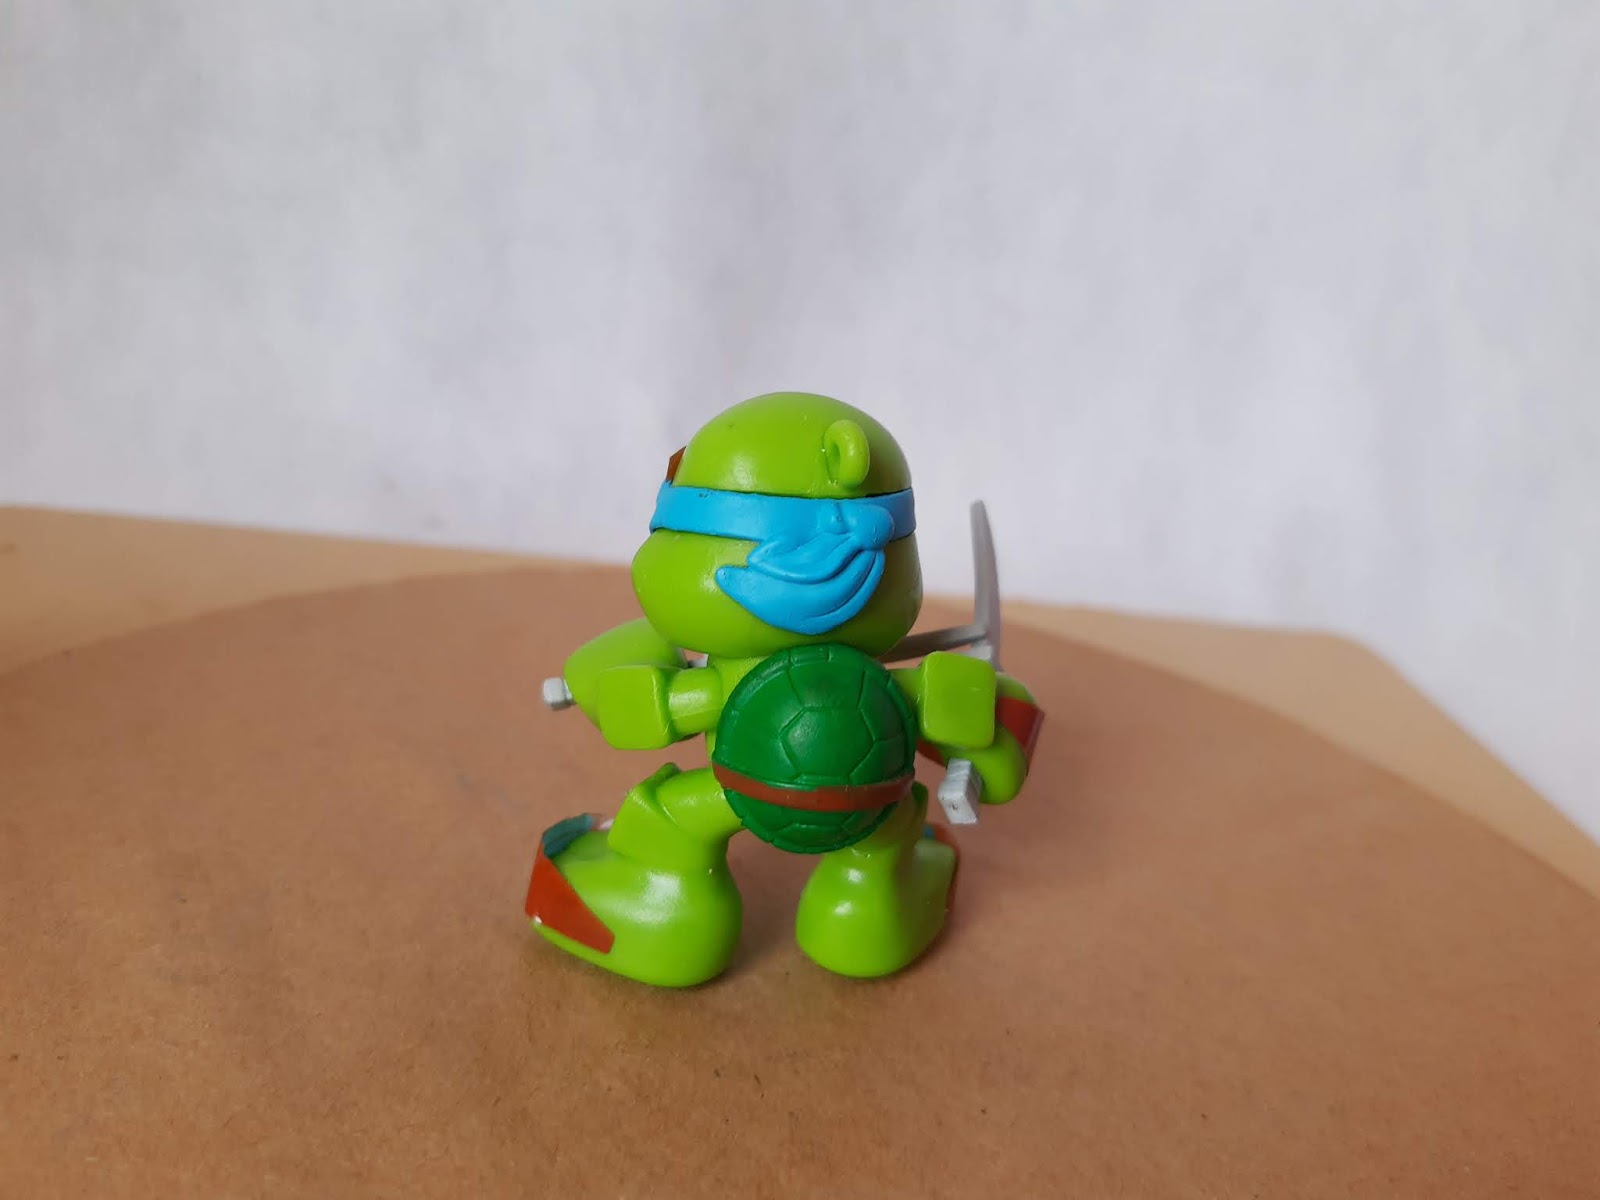 Bob's lança promoção com toy arts das Tartarugas Ninja